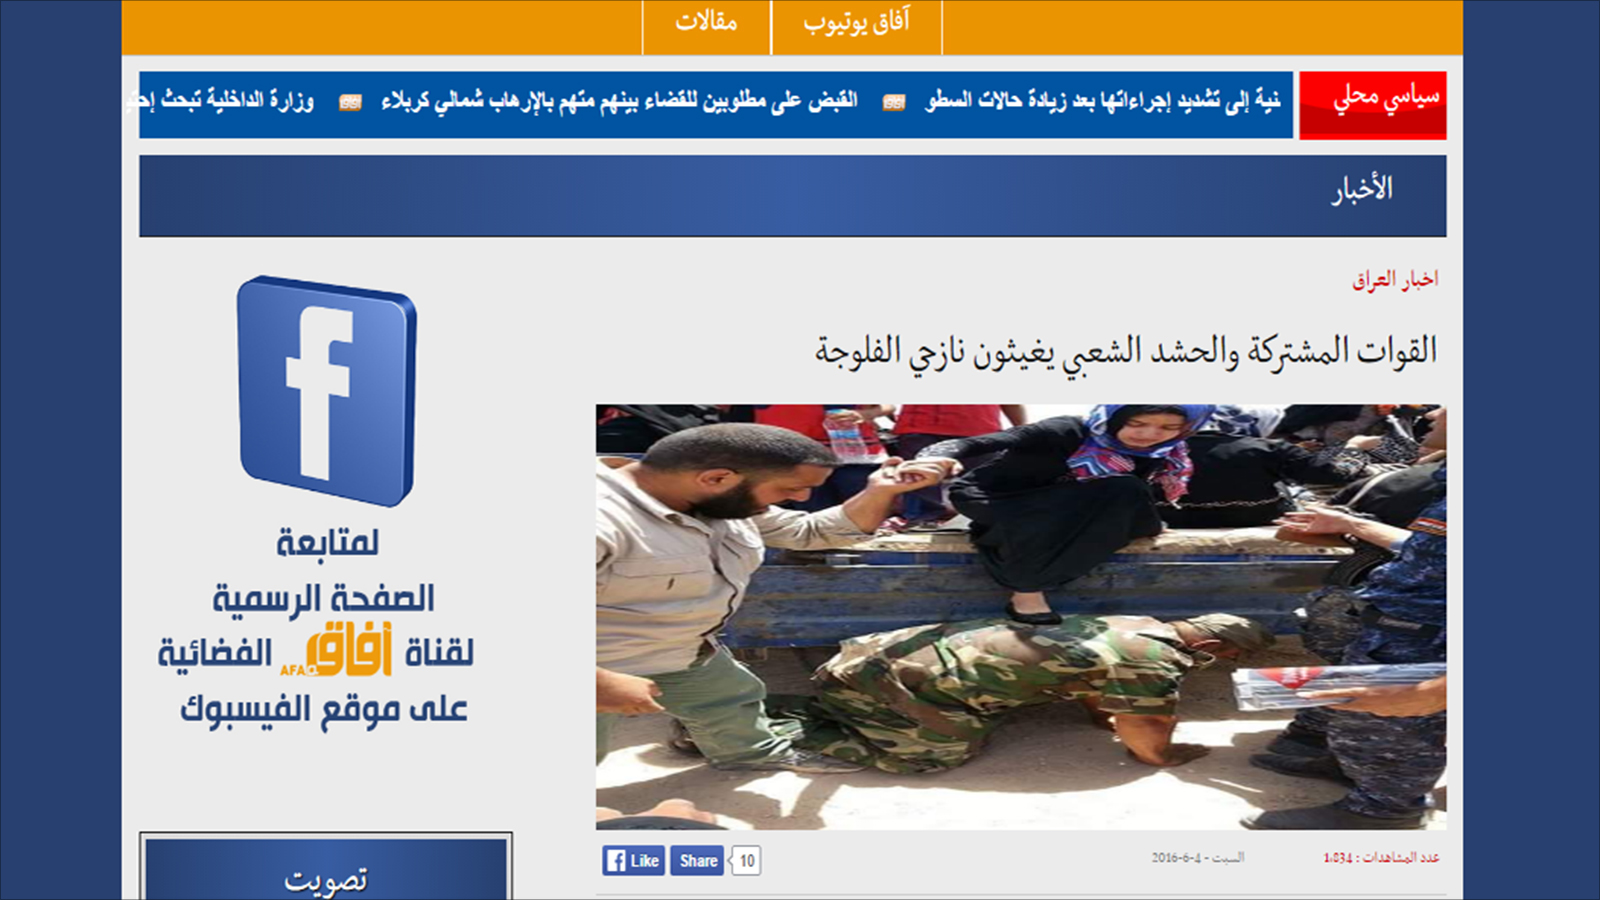 ‪الإعلام العراقي وظف الصورة نفسها قبل ستة أشهر للدعاية للحشد الشعبي‬ (الصحافة العراقية)